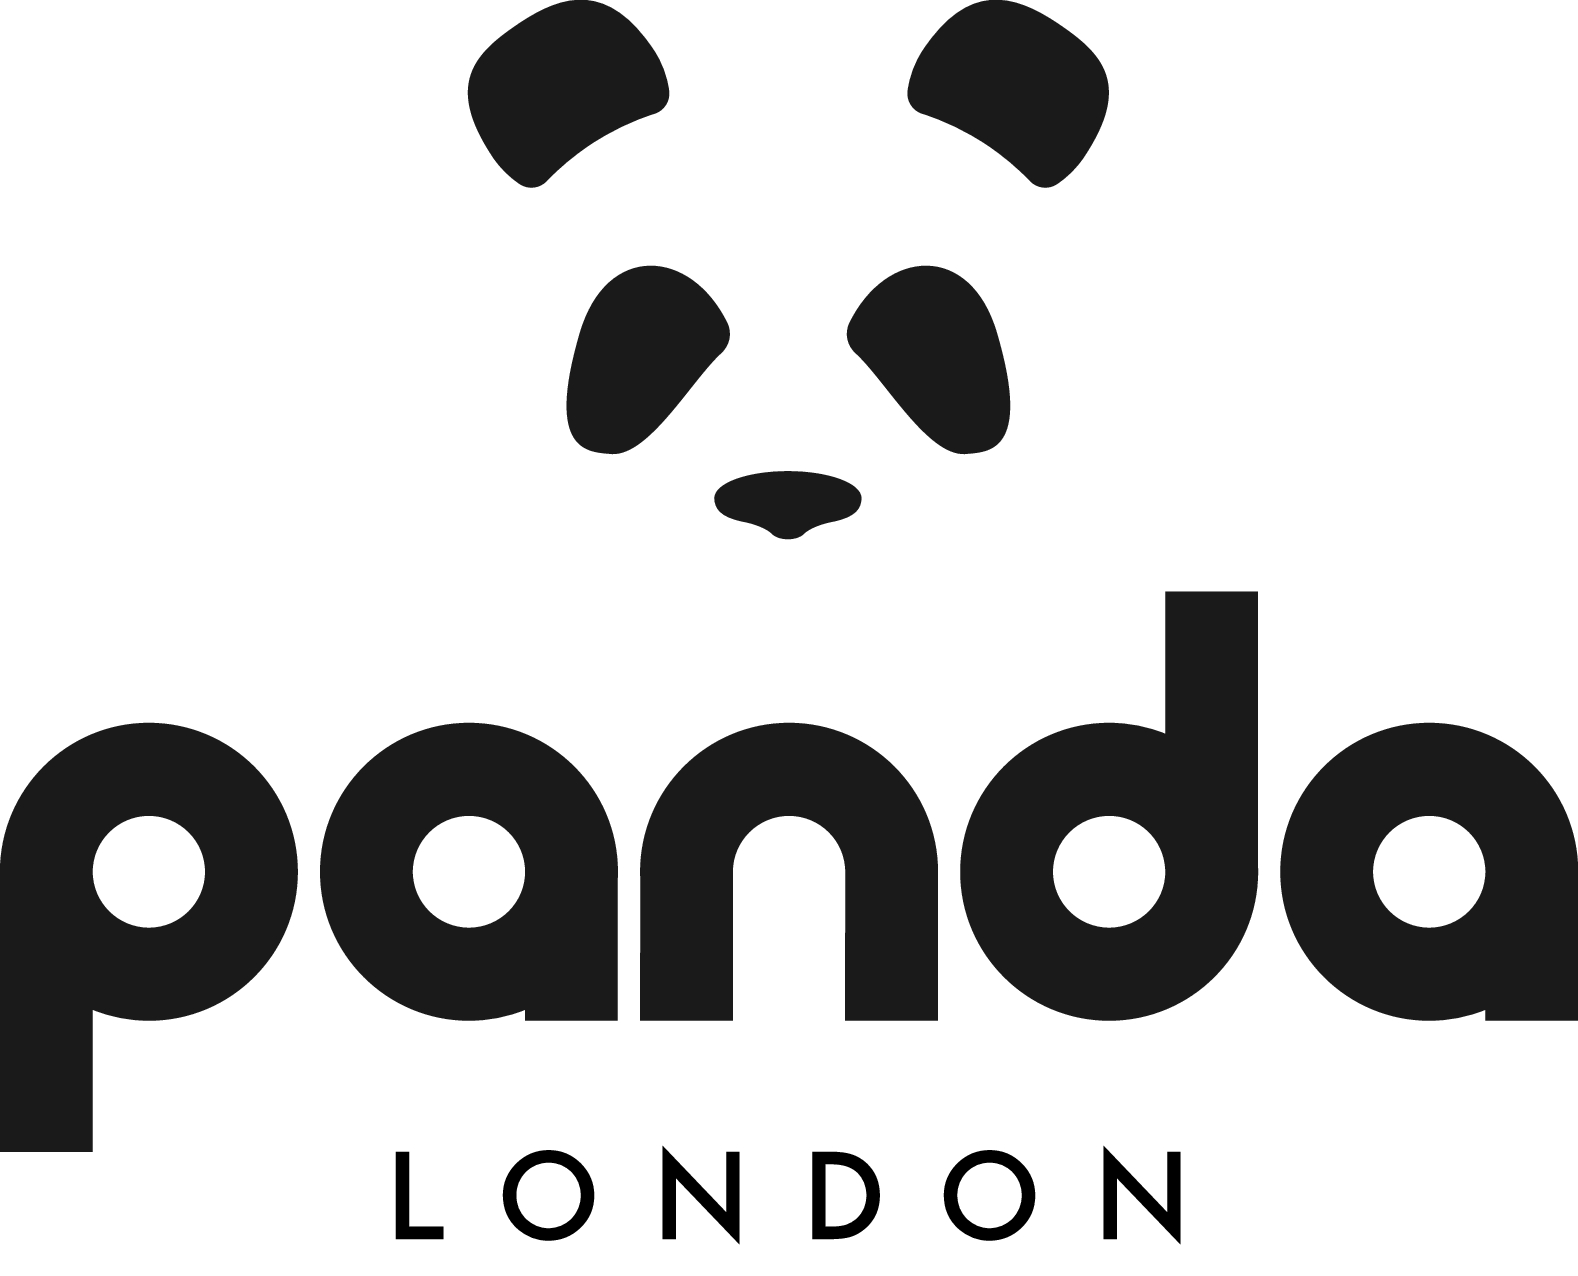 Panda London 프로모션 코드 